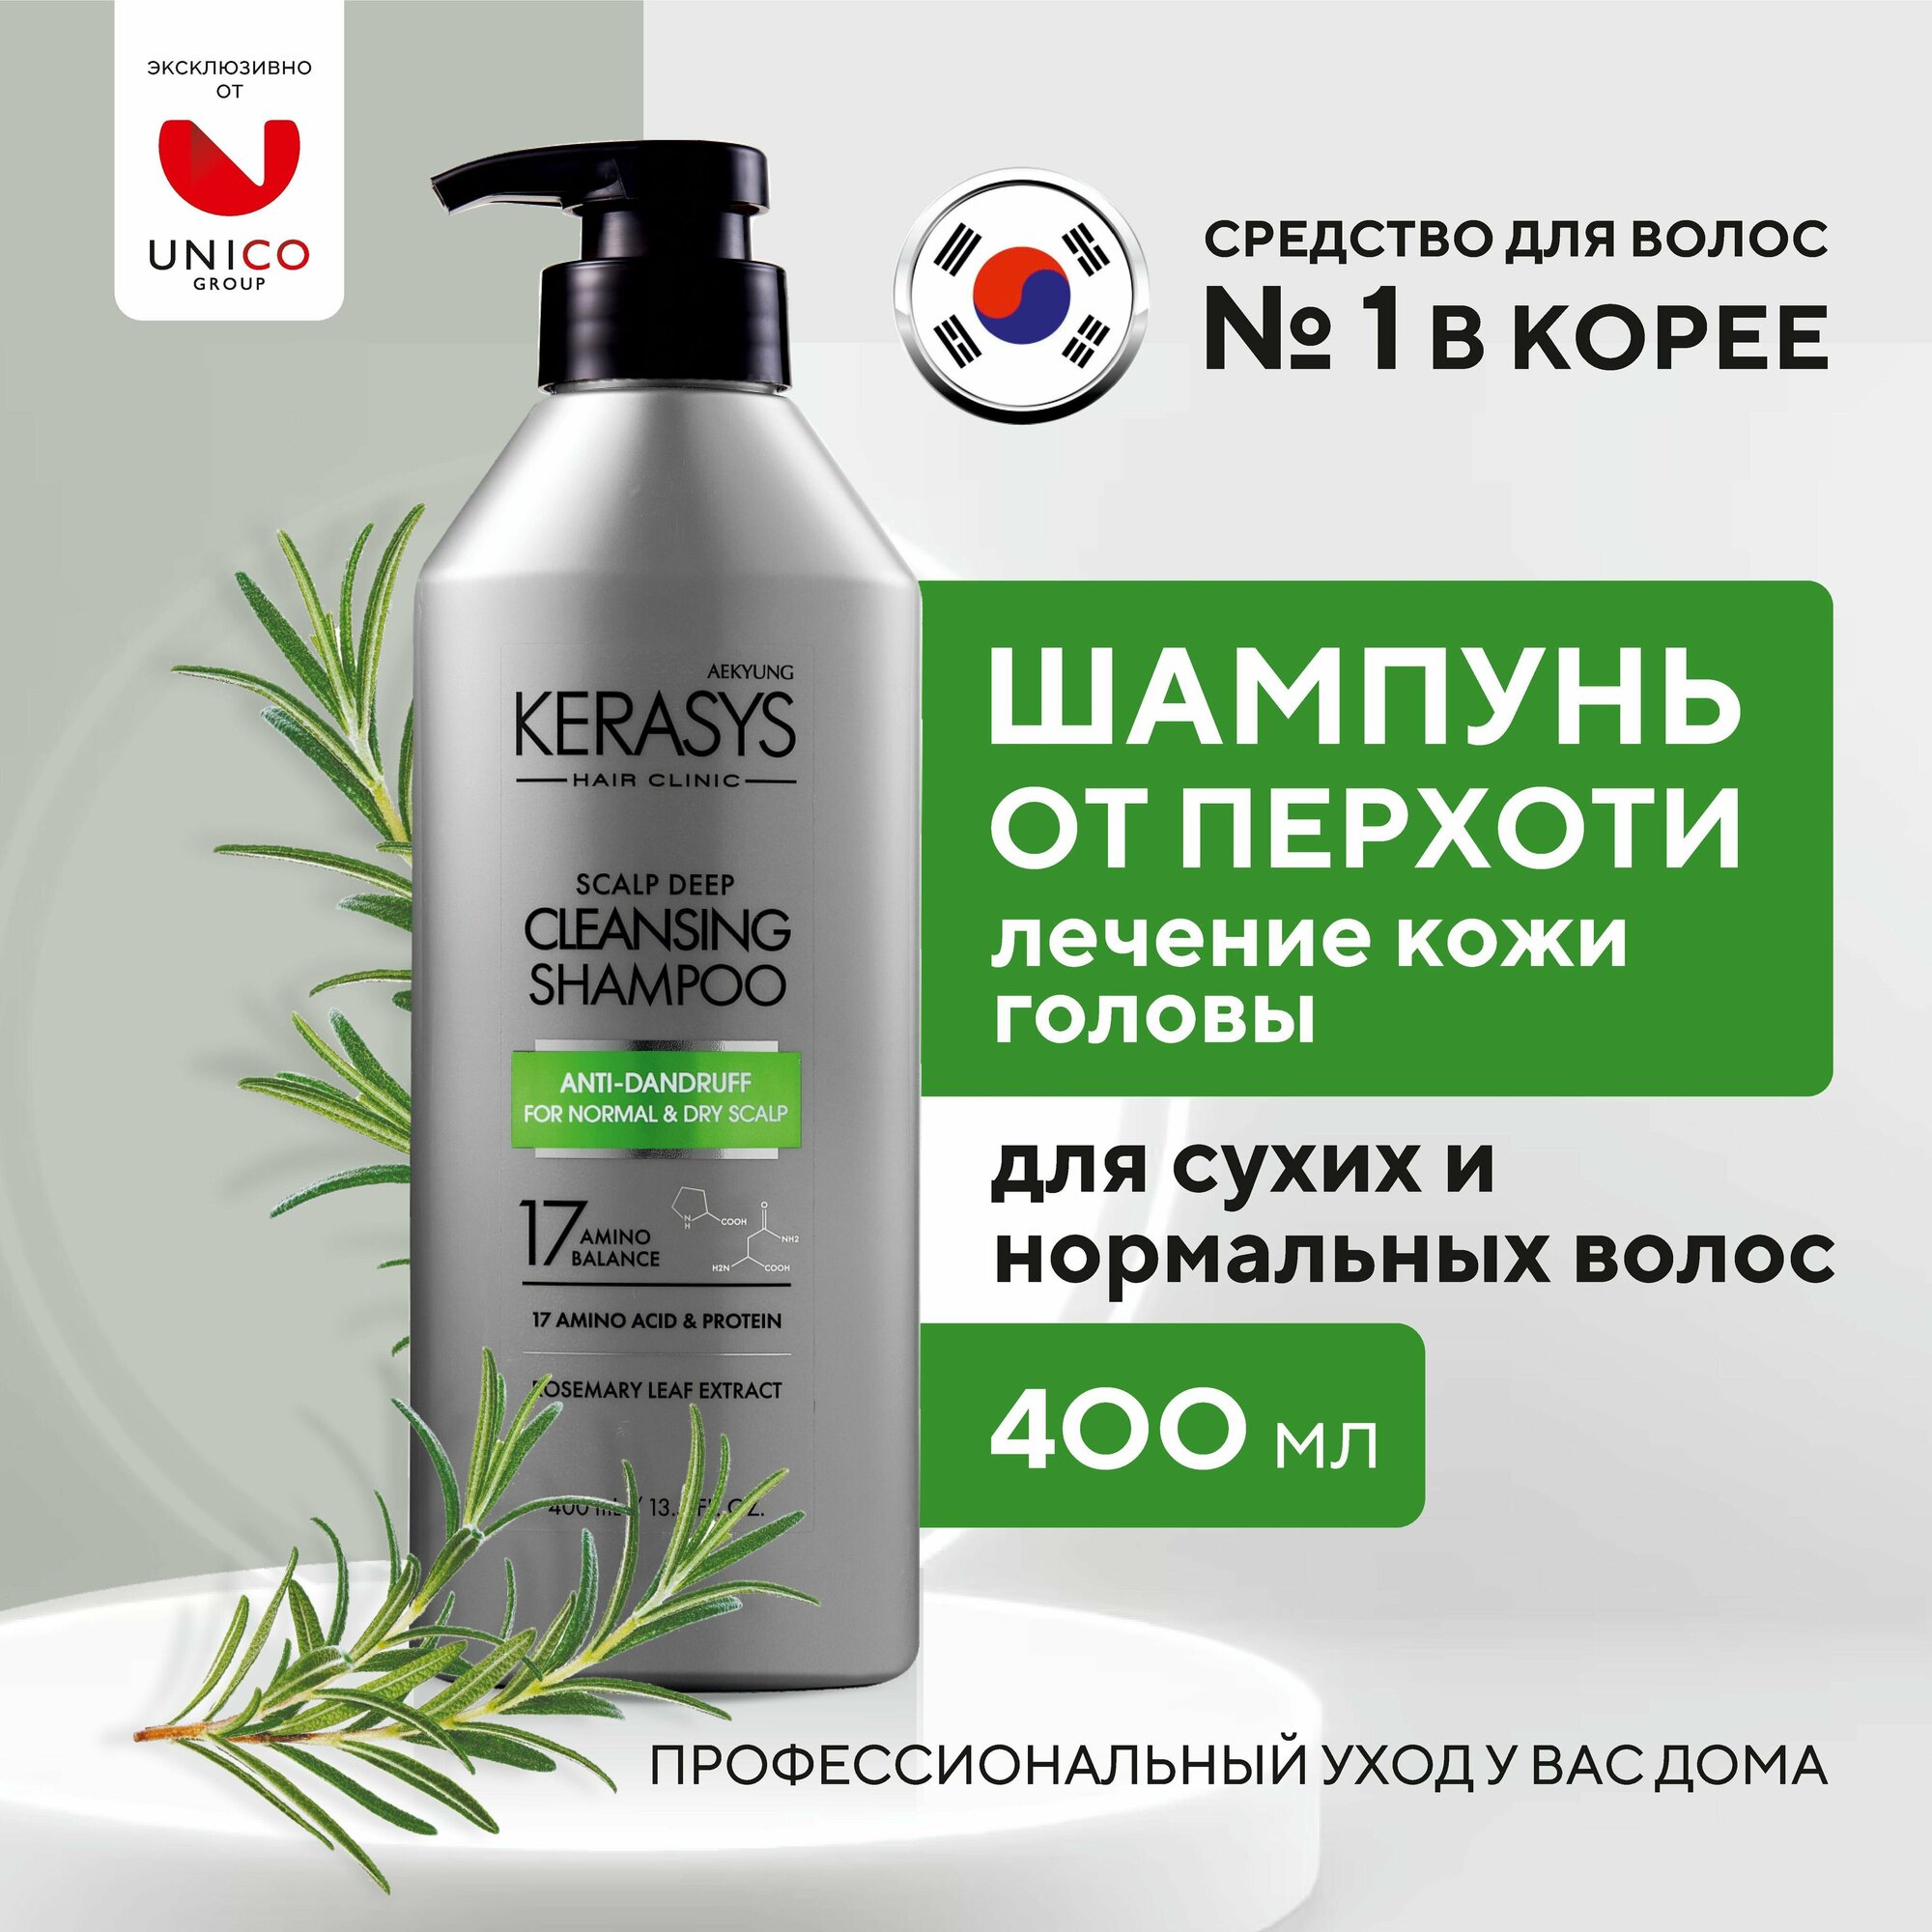 Kerasys Лечебный Корейский Шампунь для волос от перхоти для сухих и нормальных волос, 400 мл, Профессиональный протеиновый очищающий увлажняющий